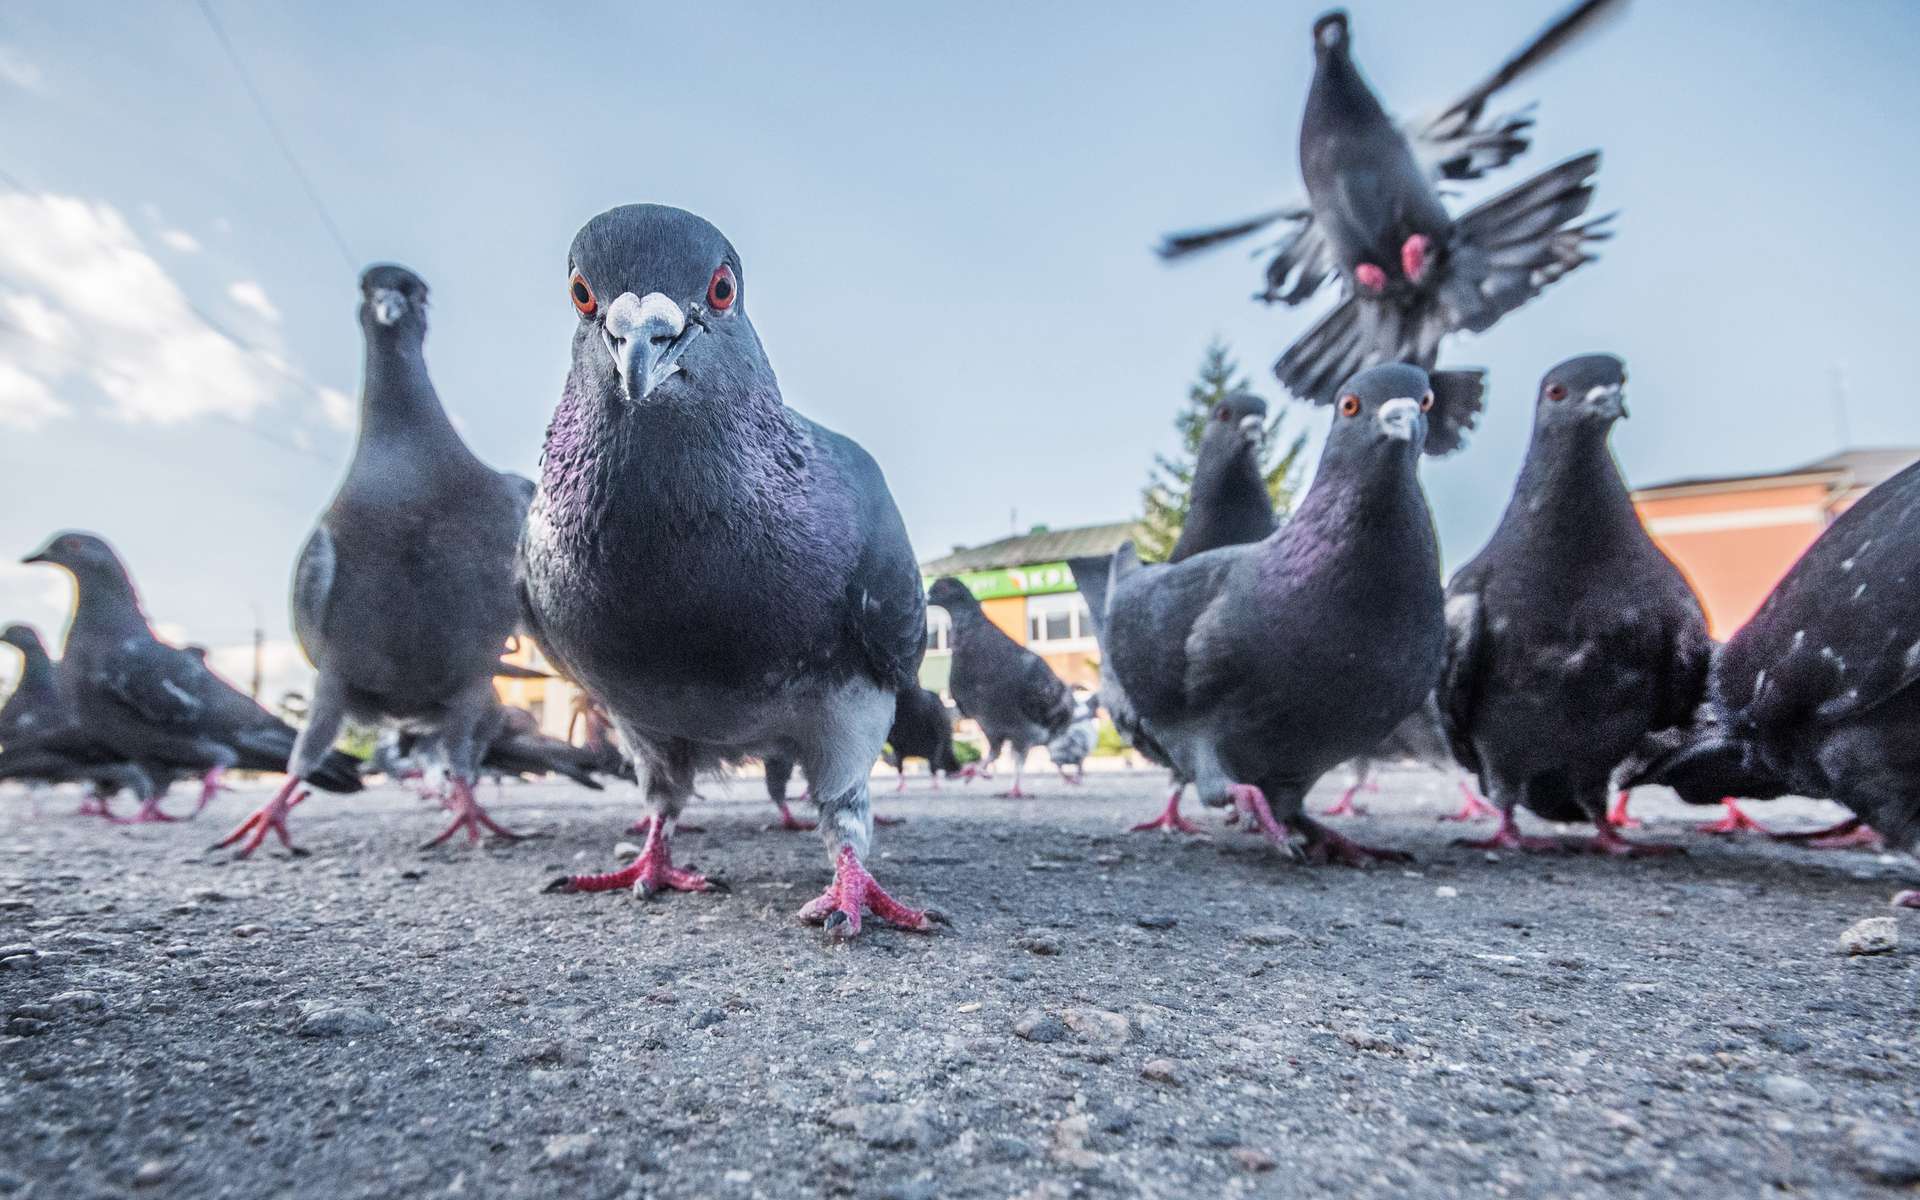 Les pigeons perdent régulièrement leurs doigts et pattes à cause des activités humaines : pollution et... coiffeurs ! © Rostyle, Adobe Stock